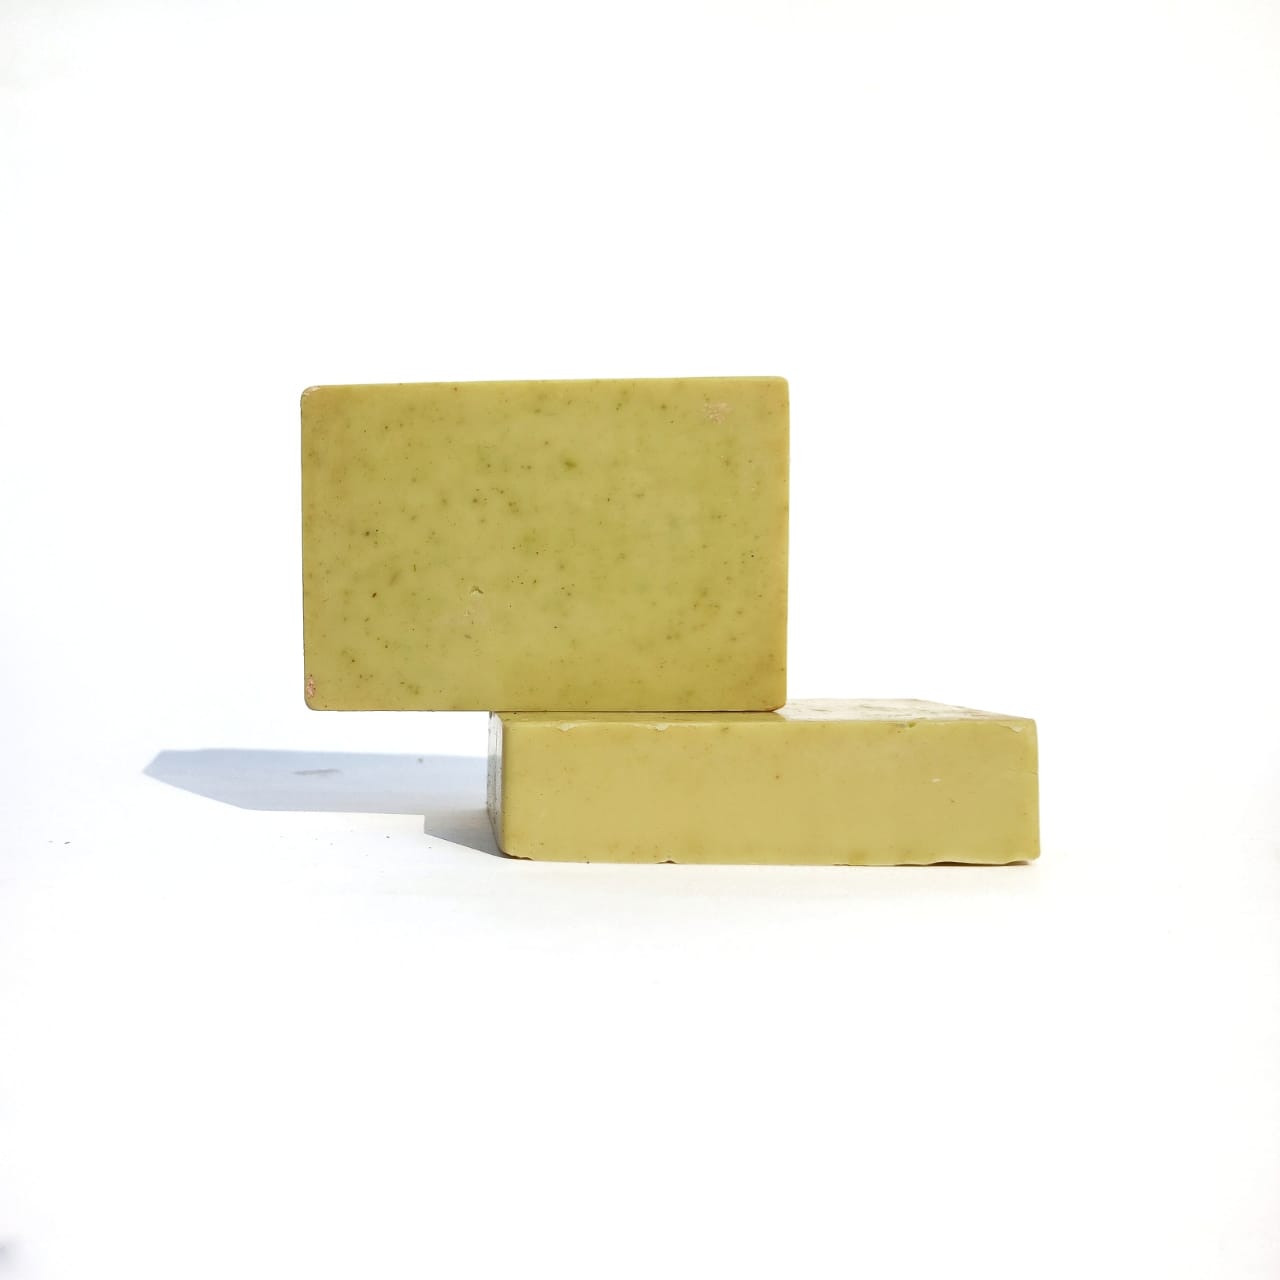 Moringa & Chamomile Botanical Soap (Pack of 2)